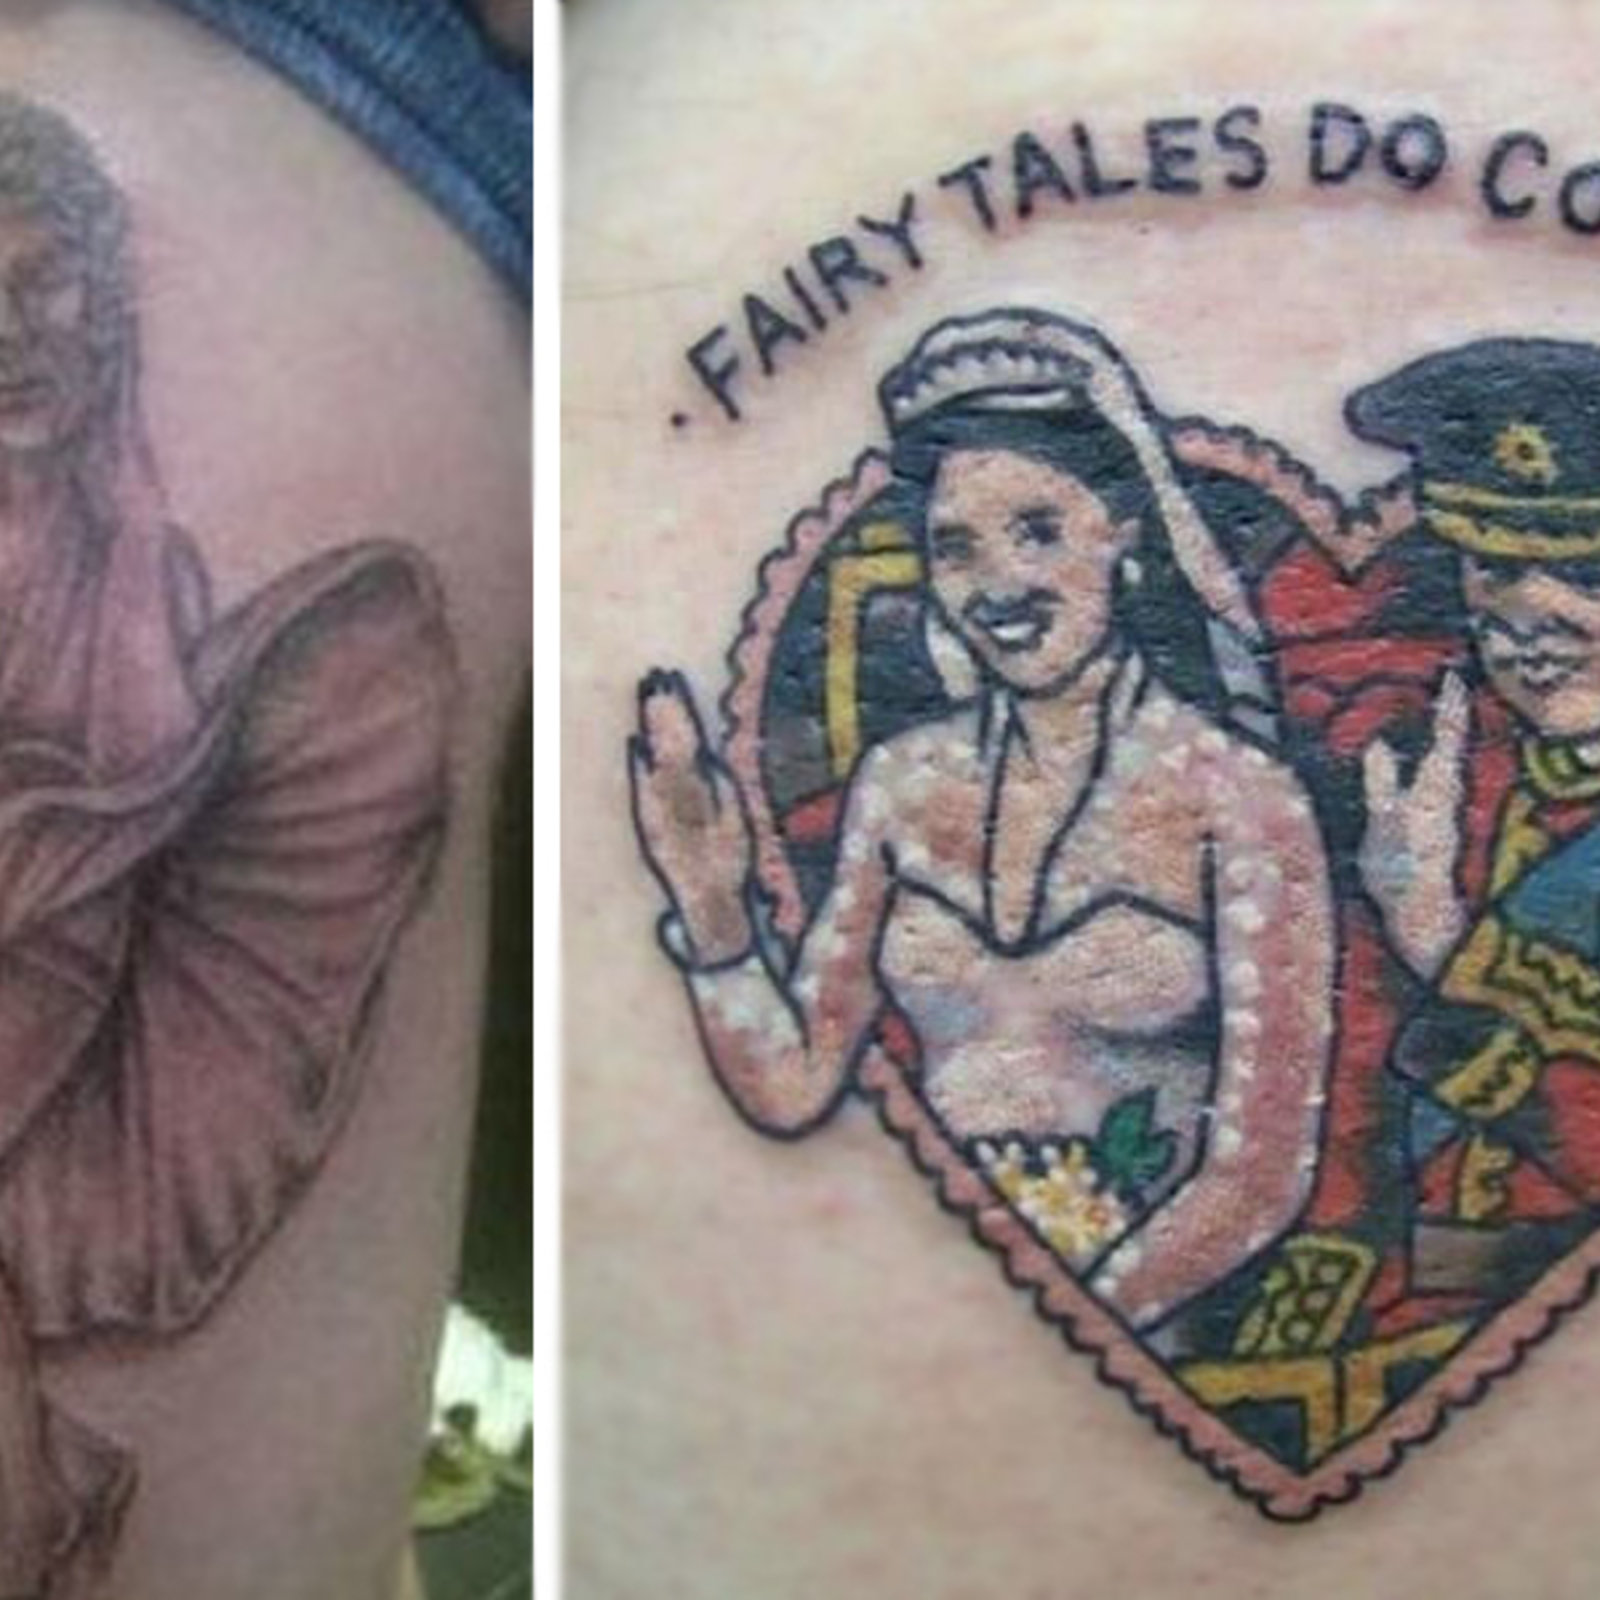 Die hässlichsten tattoos der welt